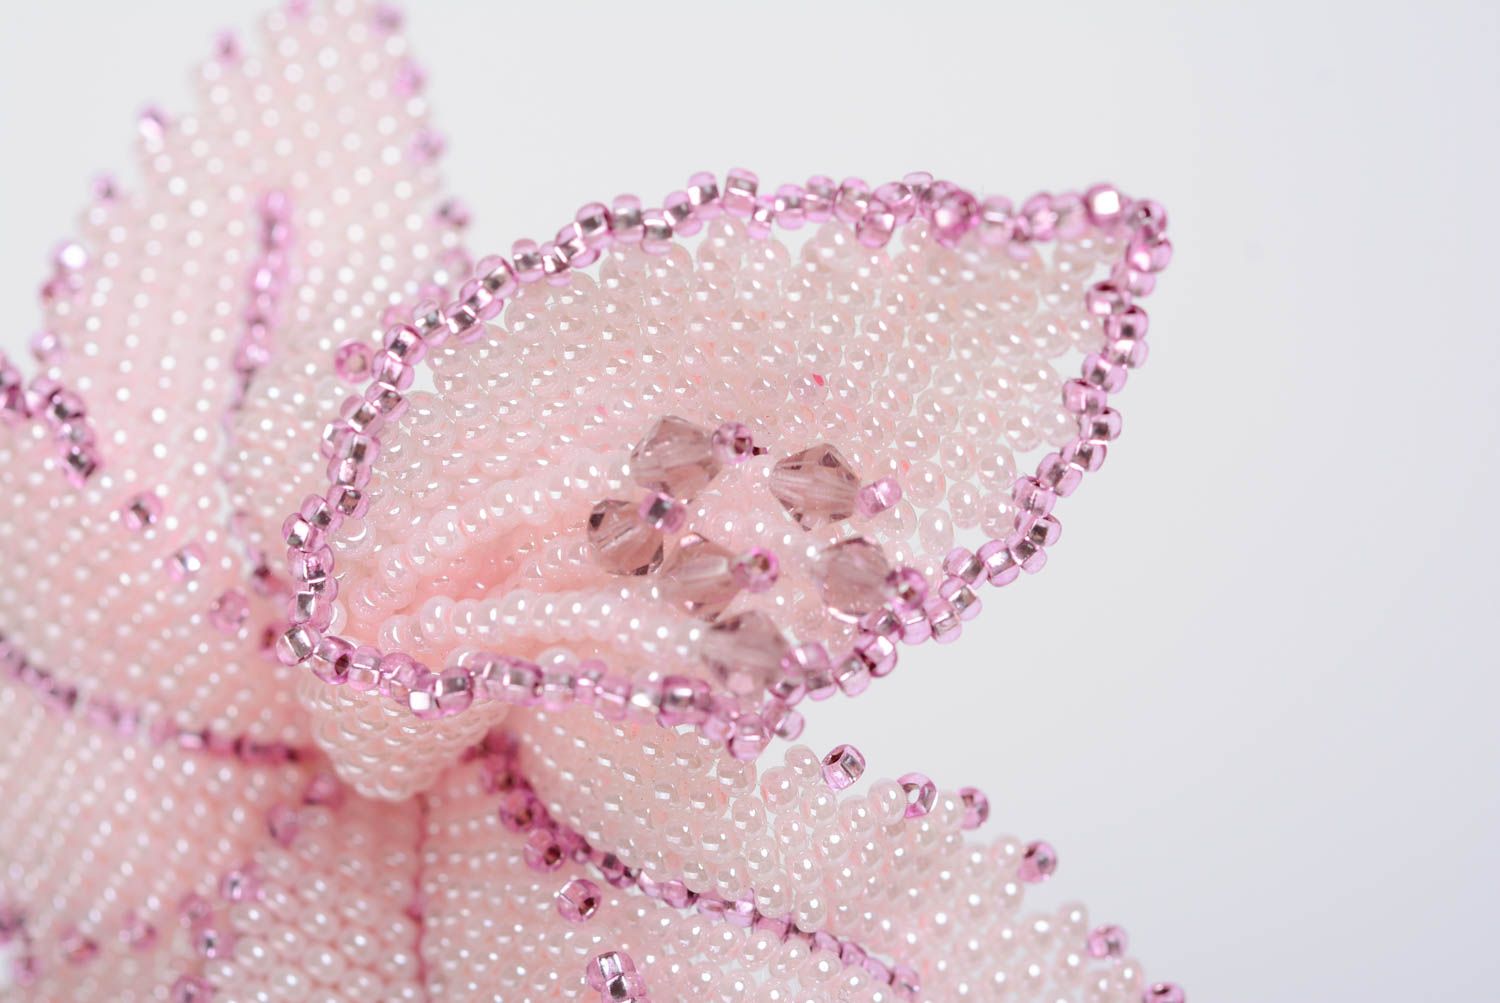 Брошь из бисера ручной работы красивая нежная объемная в виде розовой лилии фото 2